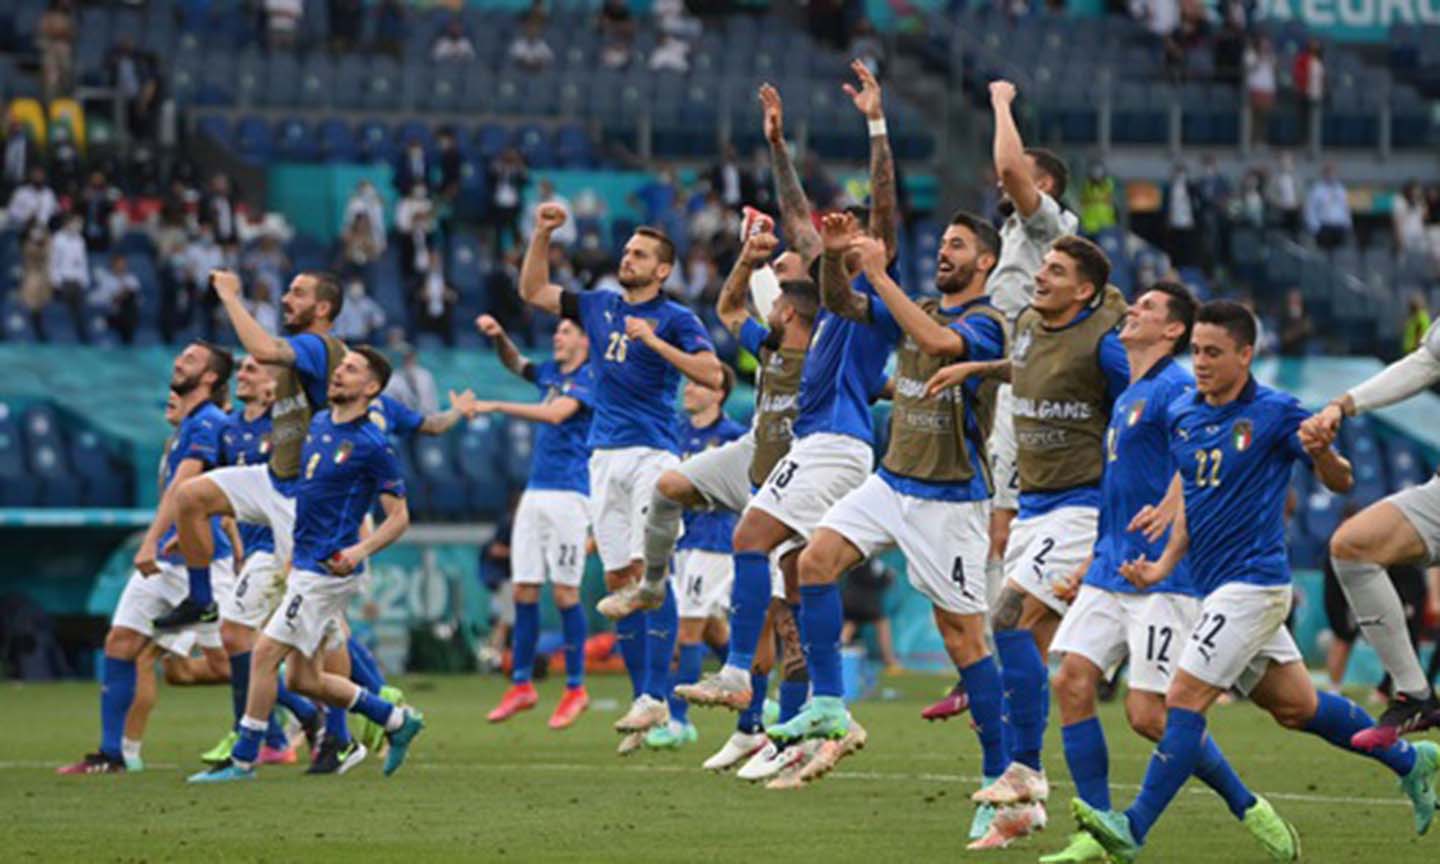 Đội tuyển Ý đang bay cao tại Euro 2020. Ảnh: Vietnamnet.vn